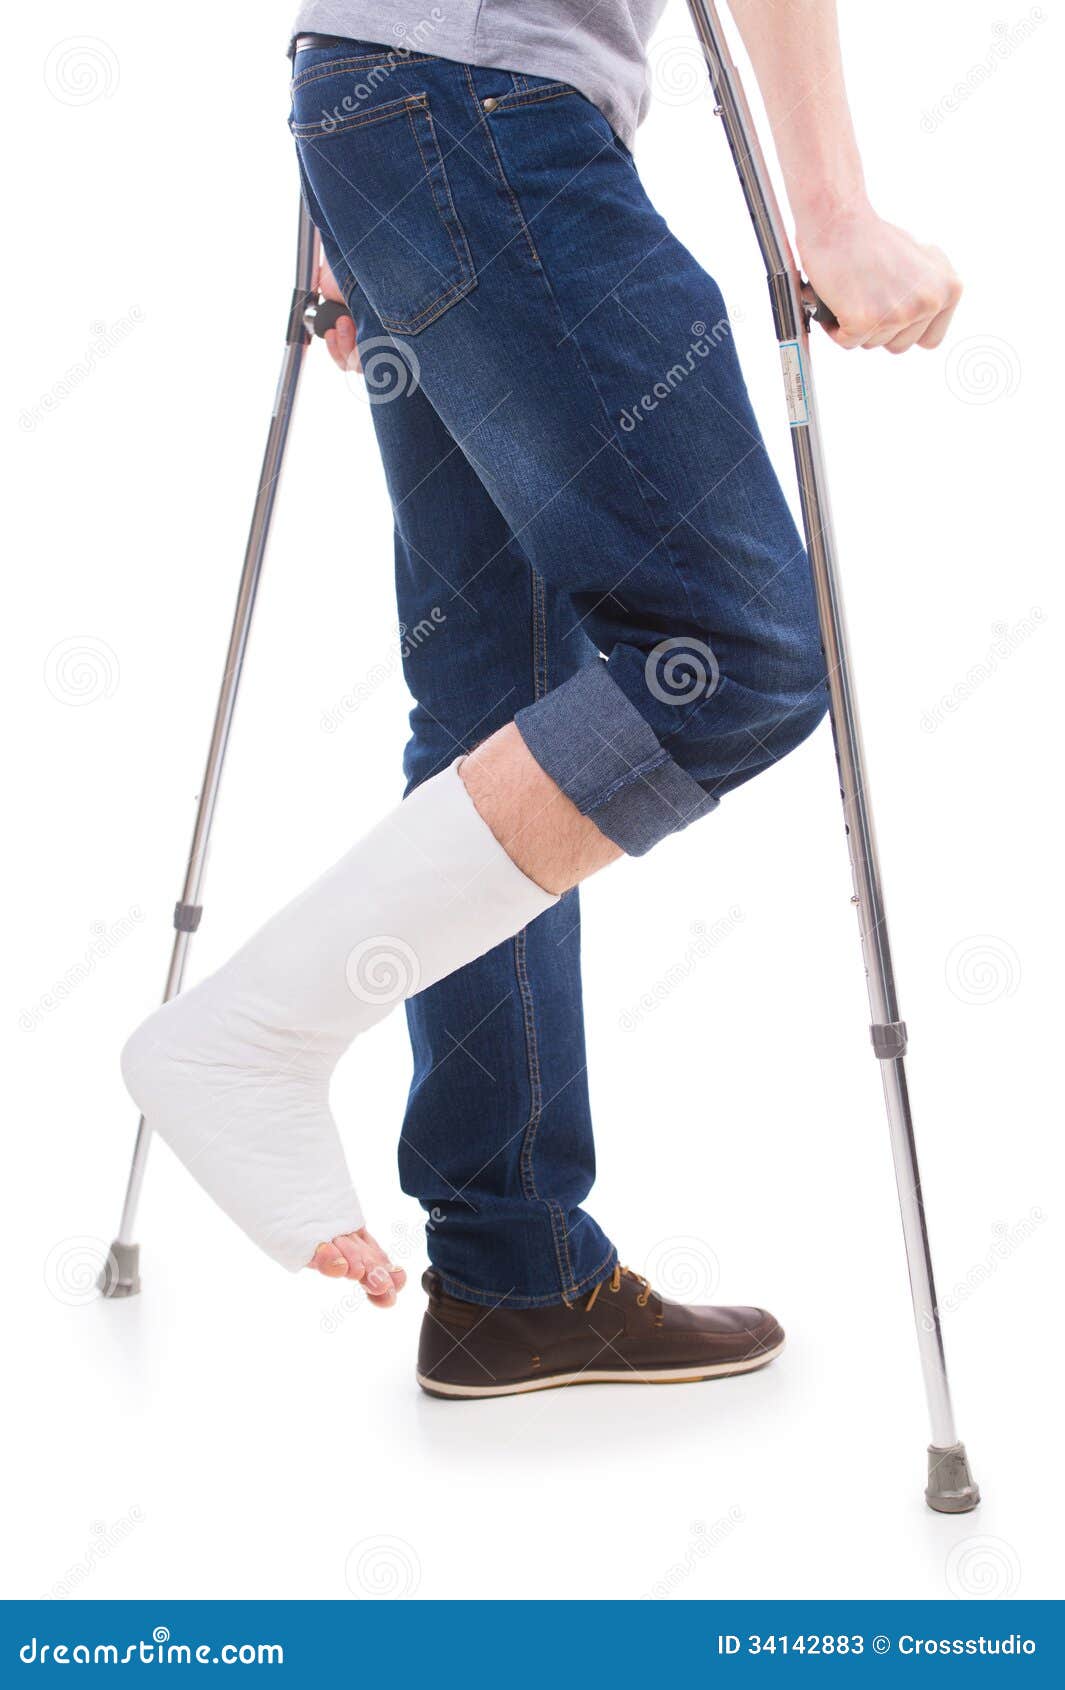 broken leg